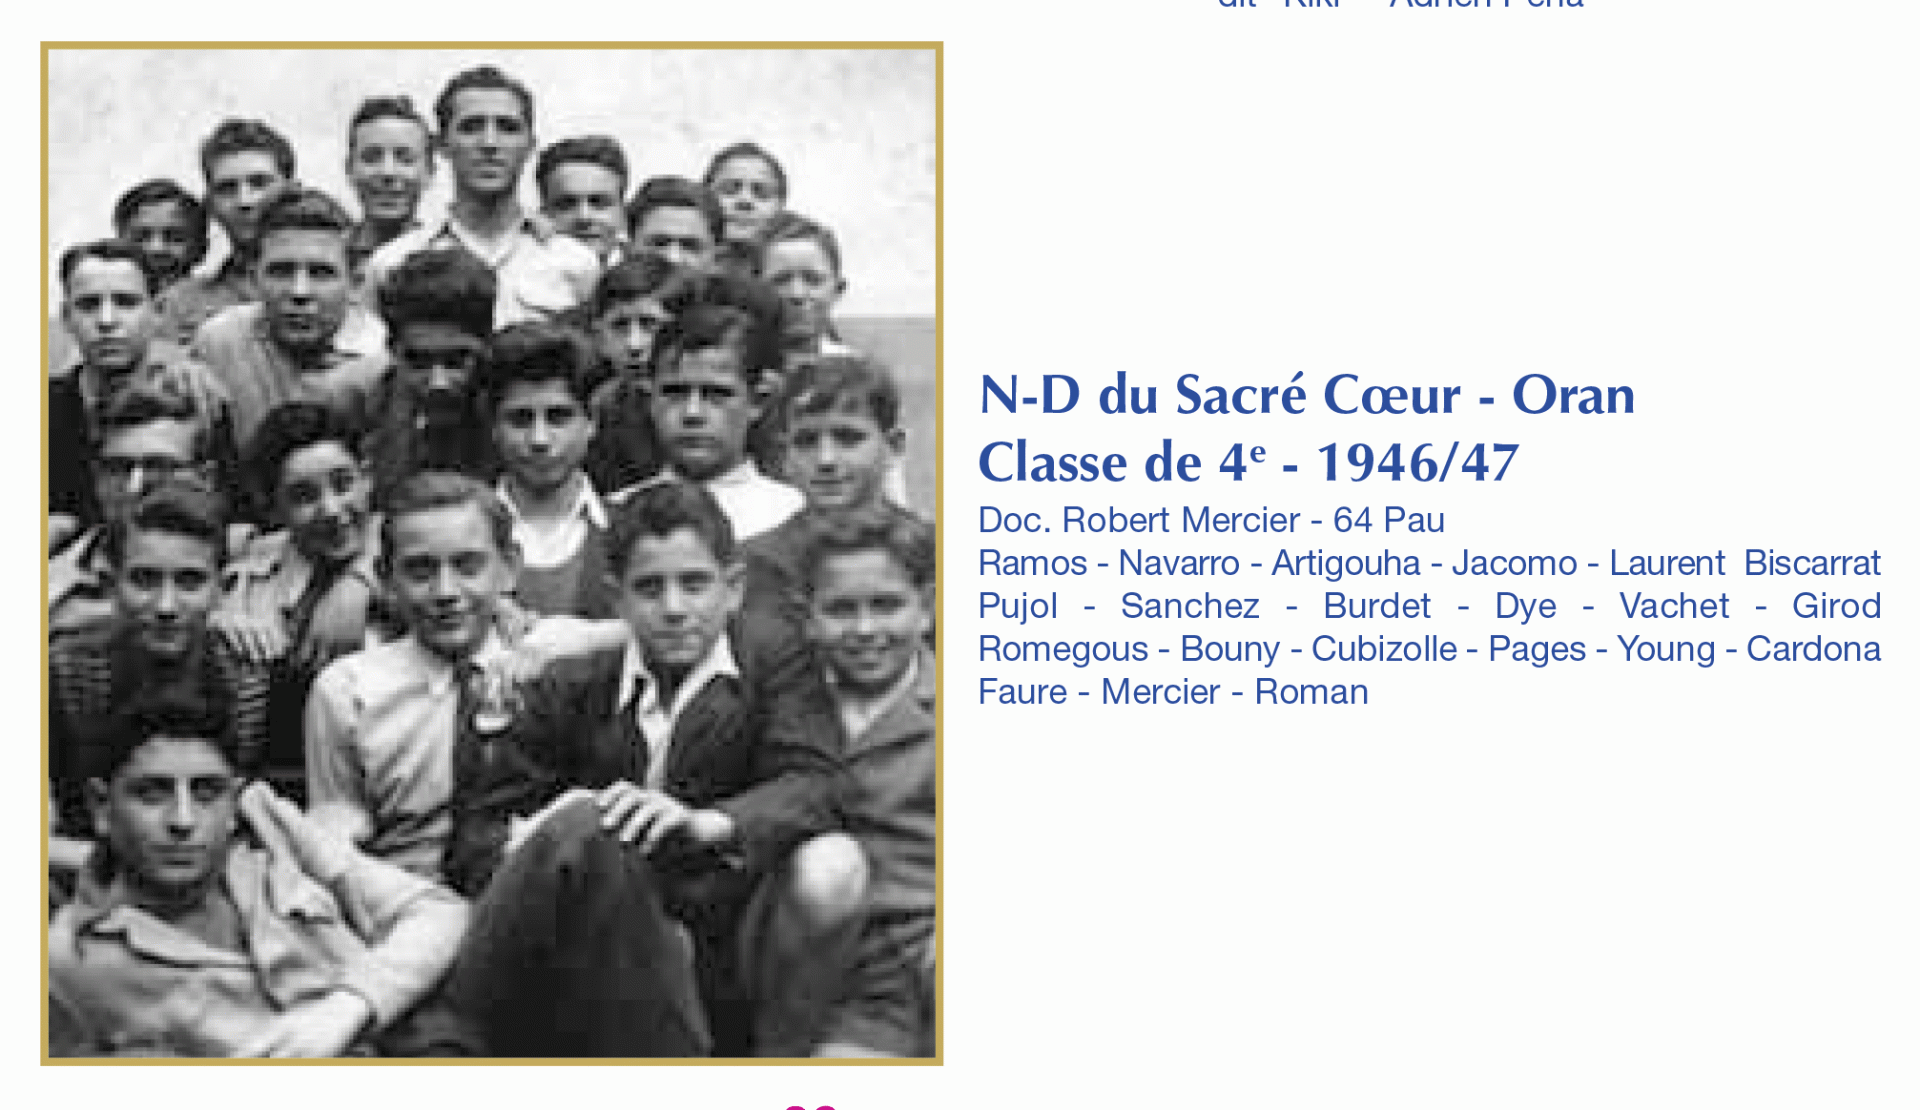 ND du Sacré Coeur 1946